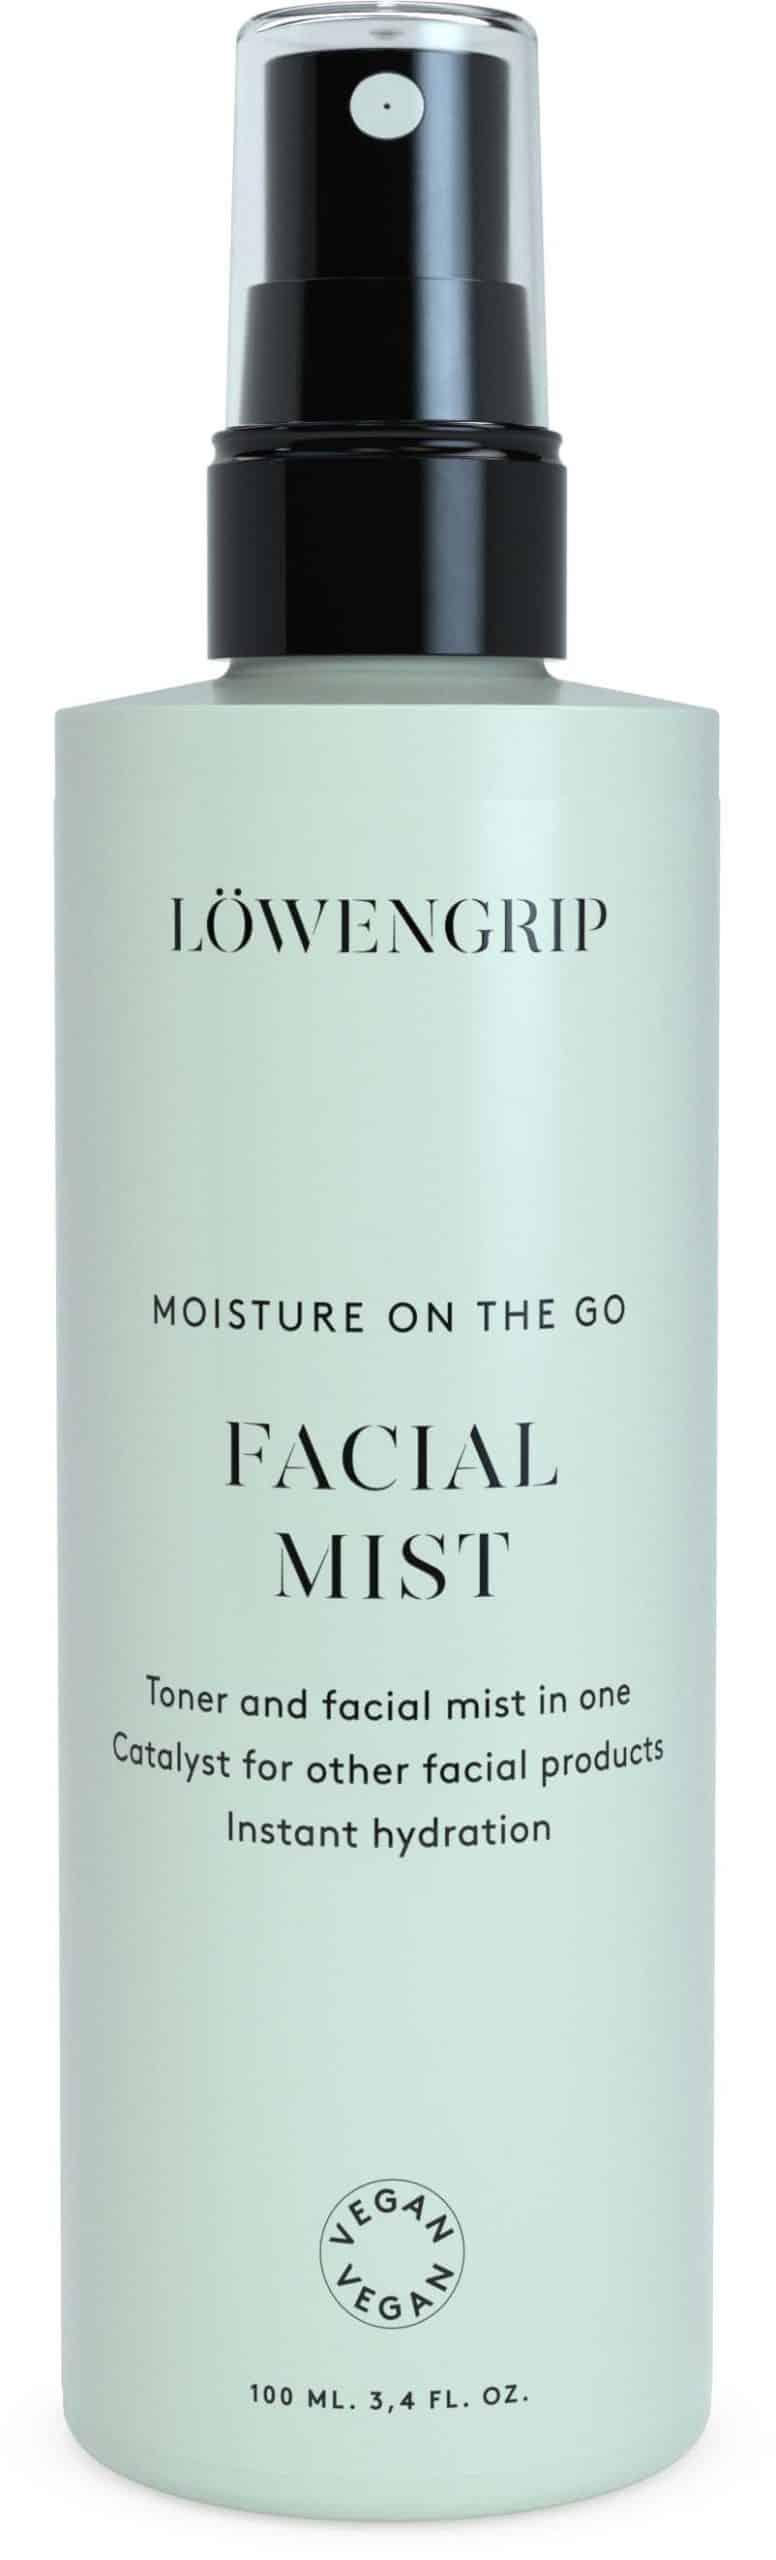 Löwengrip Moisture On The Go Facial Mist (100 ml)